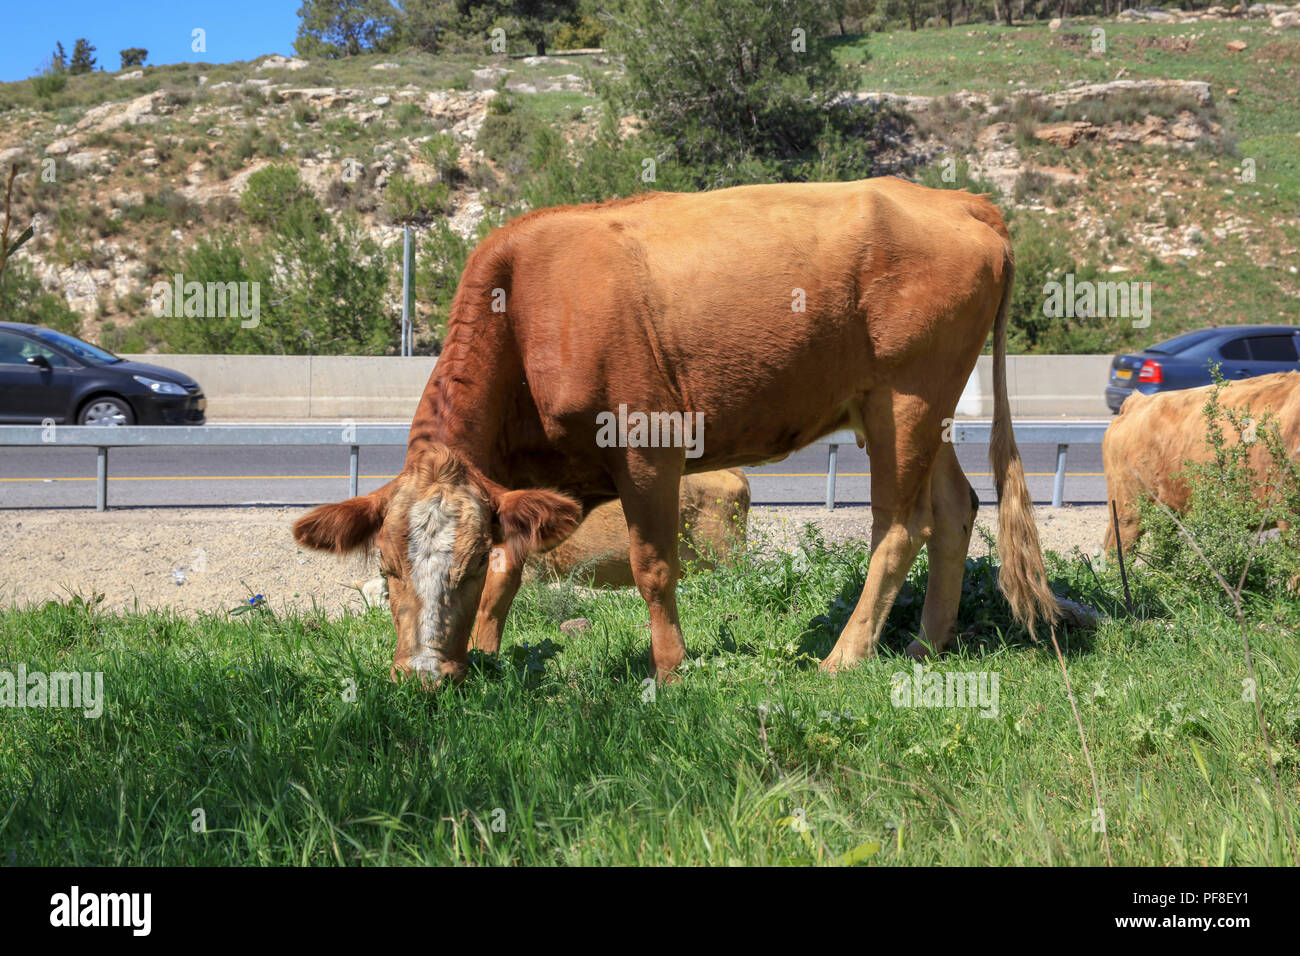 Cattle graze in a field near a busy road Stock Photo